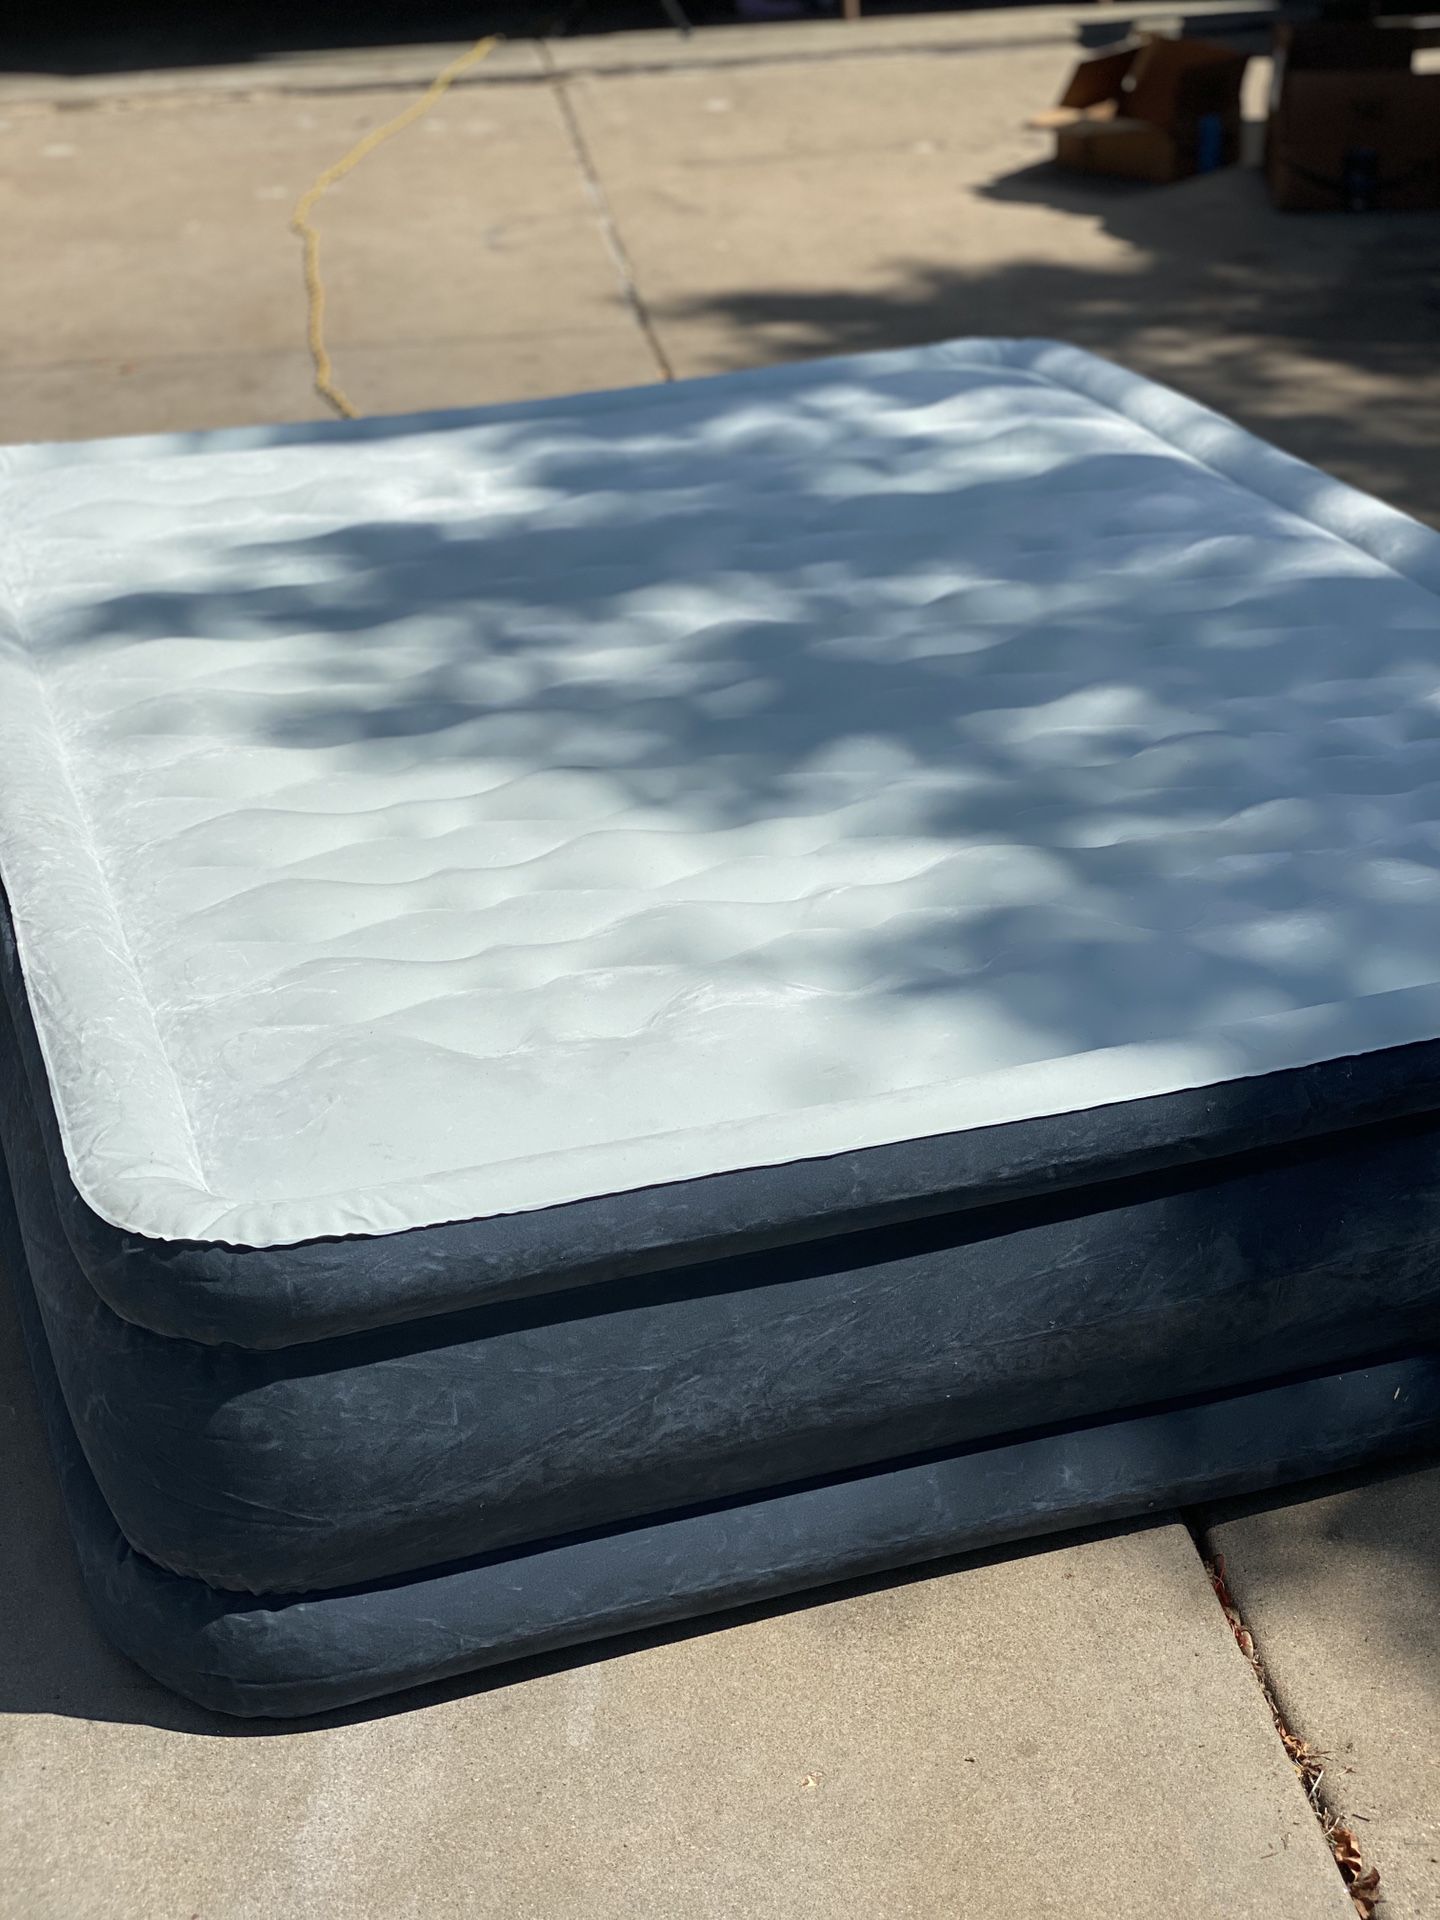 2 Queen Pillow top Air mattress’s